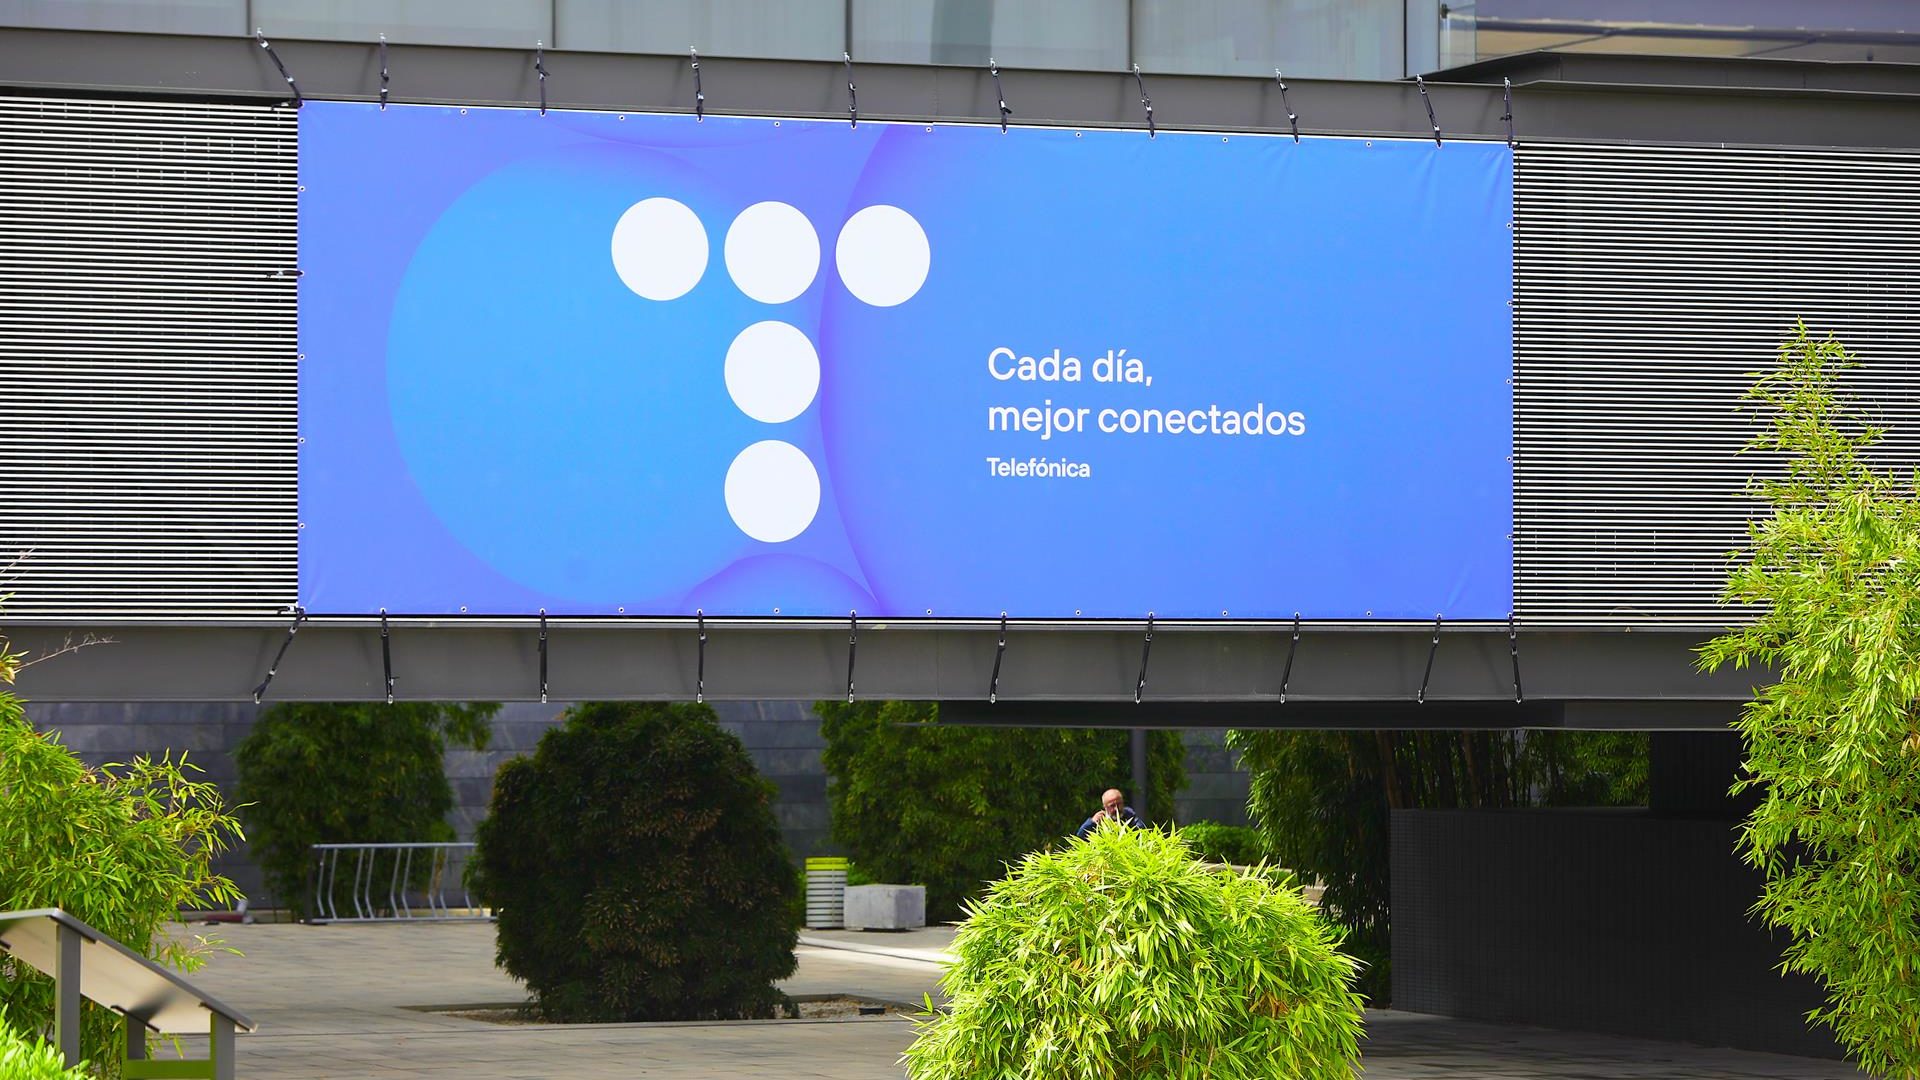 Los analistas prevén que Telefónica reduzca sus ingresos trimestrales en 1.500 millones de euros